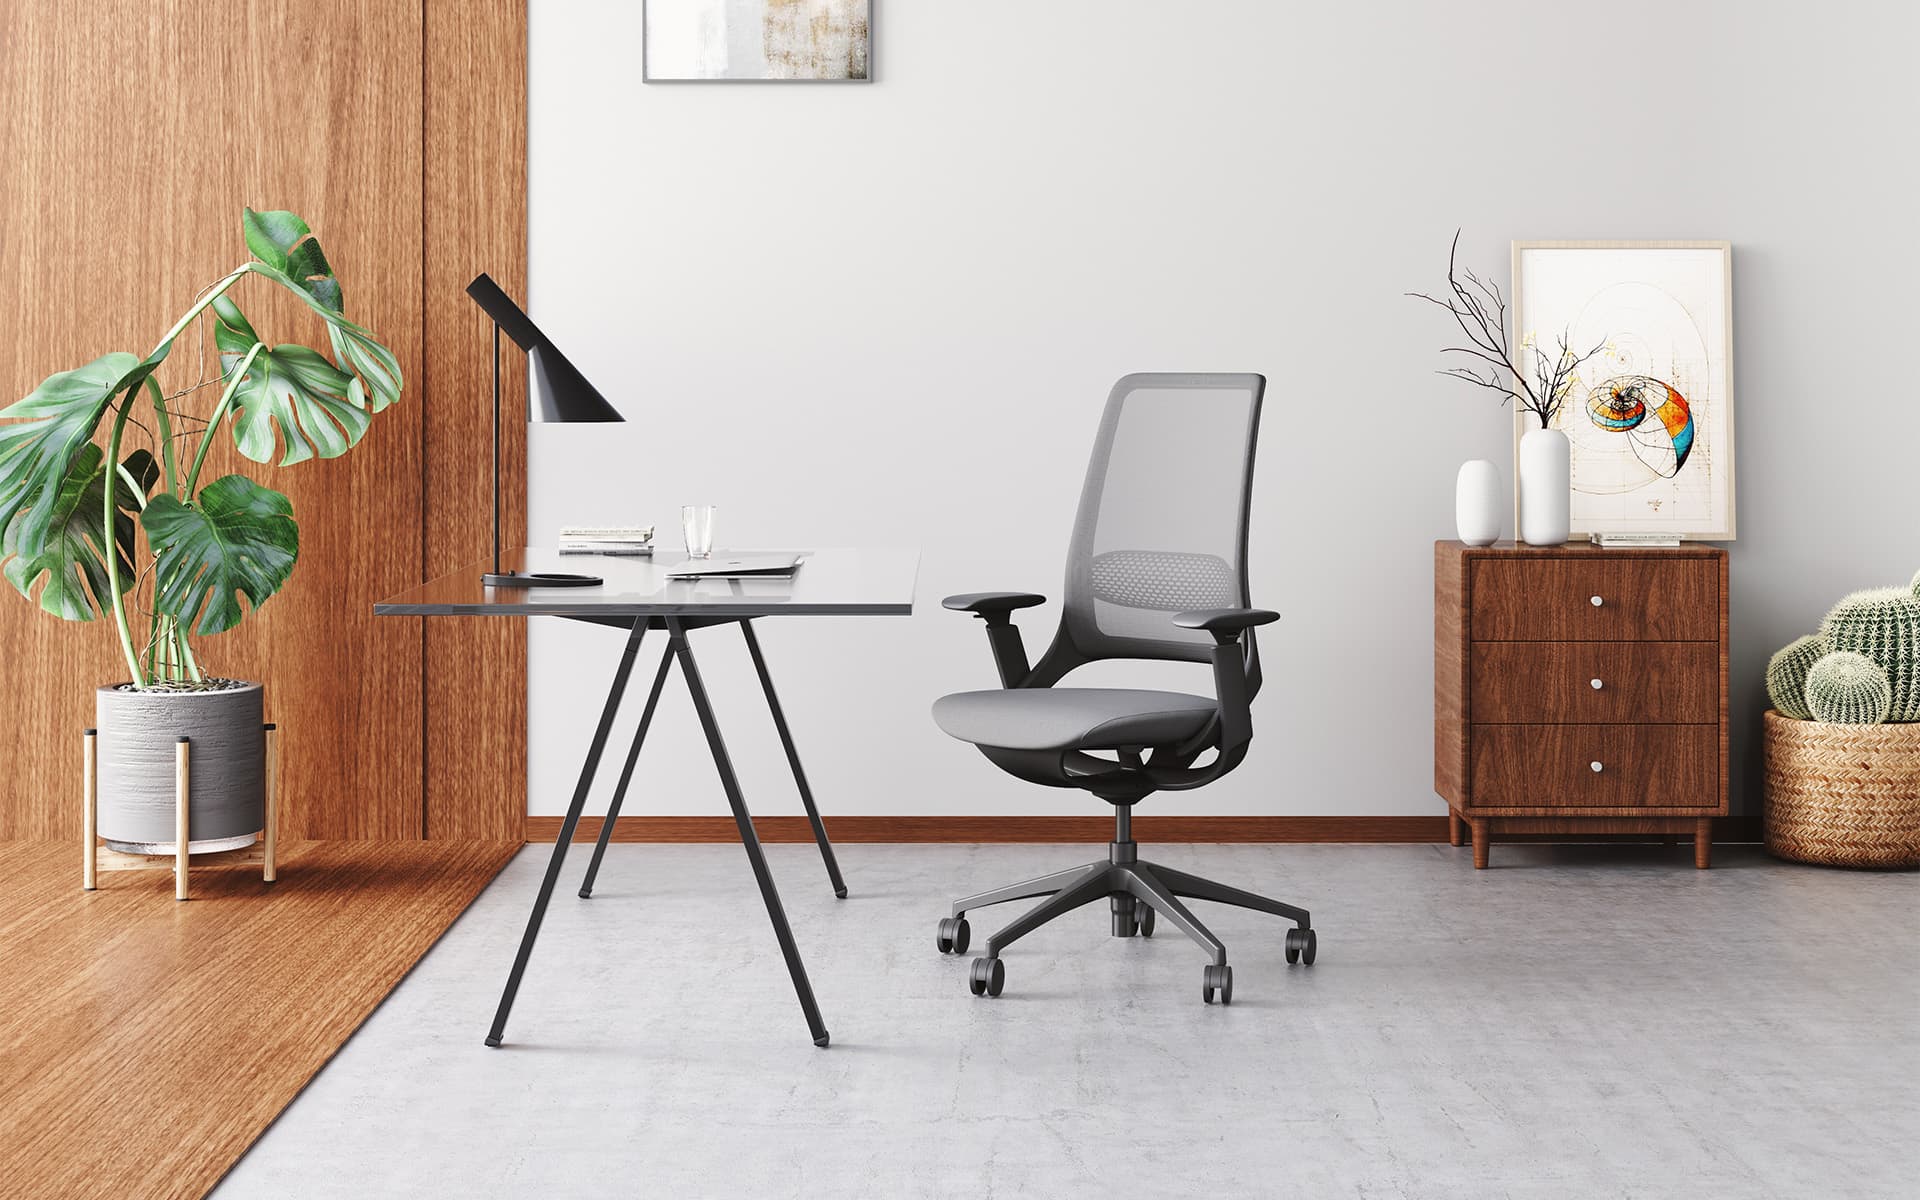 Enova Hug Bürostuhl von ITO Design in Schwarz mit grauem Bezug in einem modernen, gemütlichen Büro